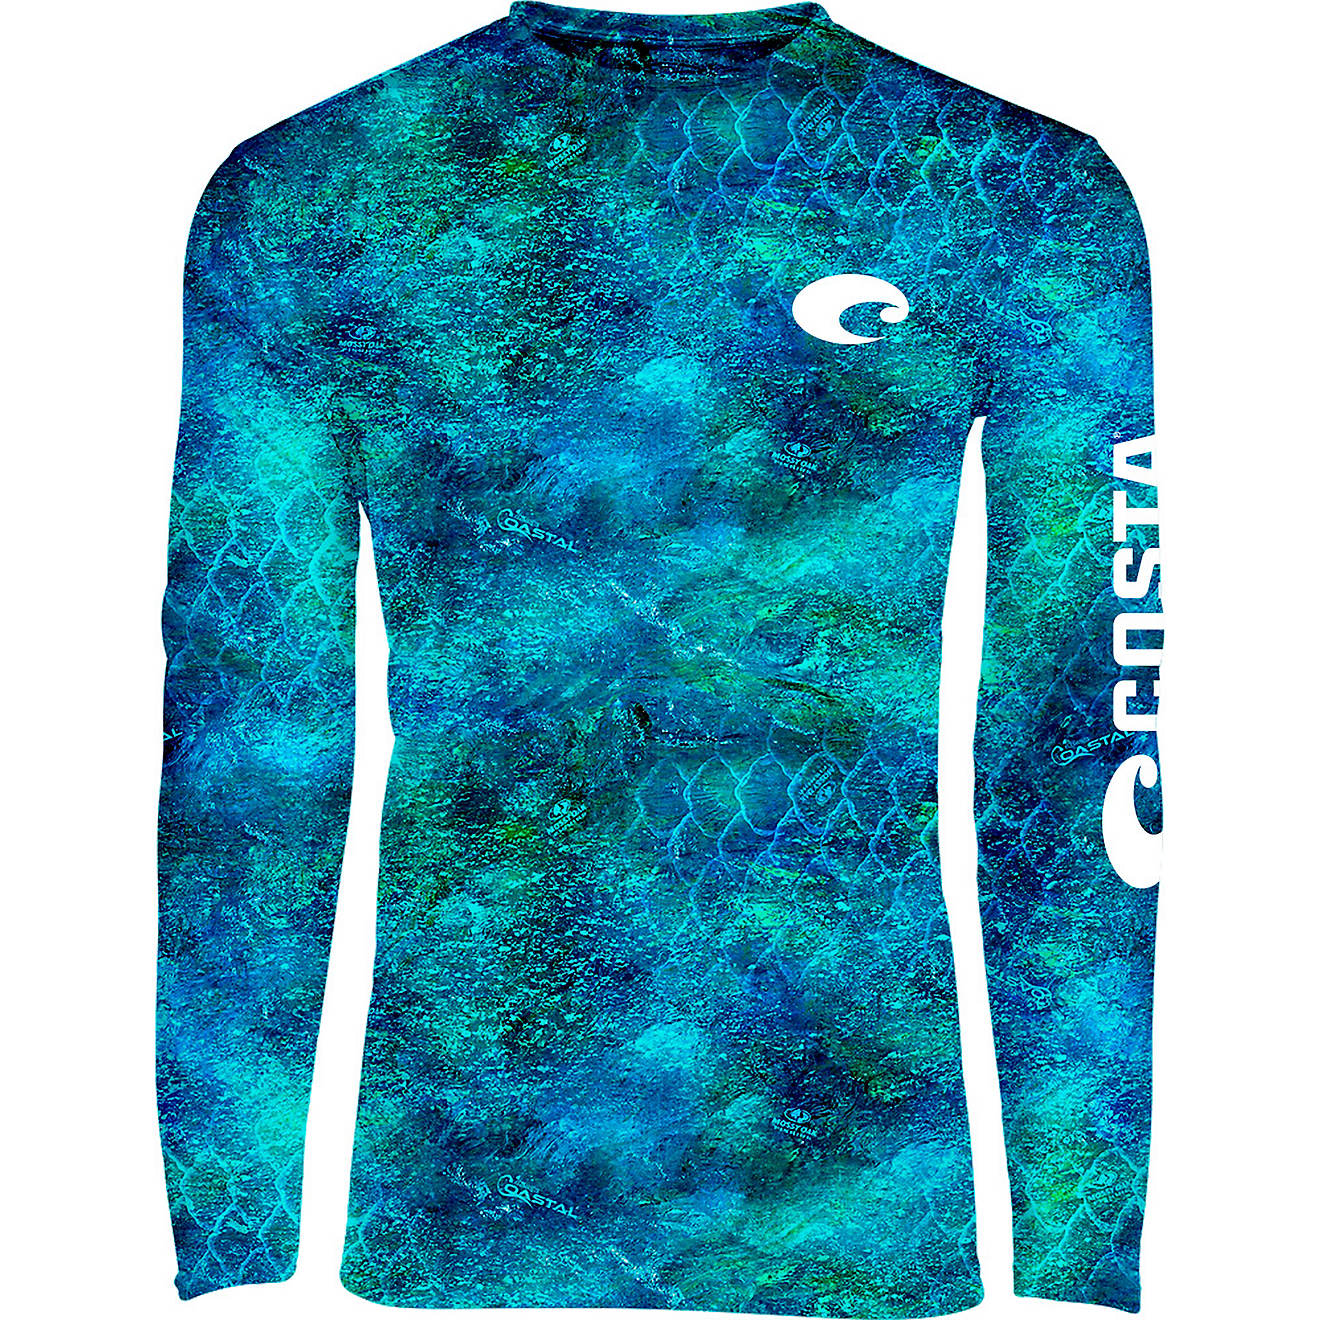 Costa Tech Hex Camo Grey Longsleeve T Shirt *All Sizes* NEW Fishing Shirt 